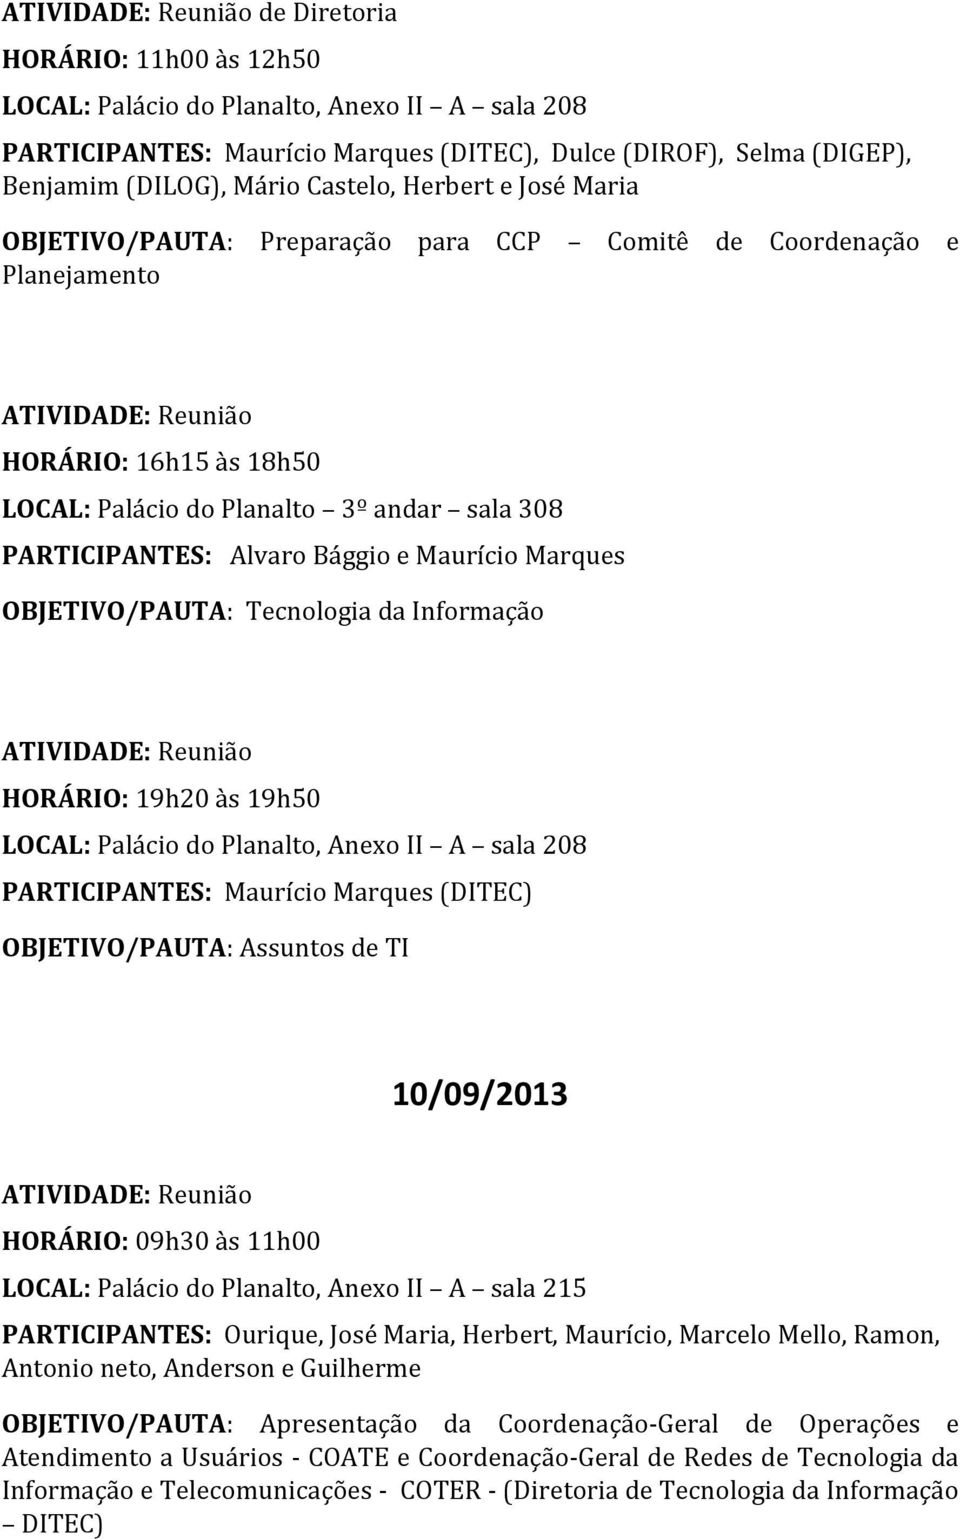 HORÁRIO: 19h20 às 19h50 PARTICIPANTES: Maurício Marques (DITEC) OBJETIVO/PAUTA: Assuntos de TI 10/09/2013 HORÁRIO: 09h30 às 11h00 LOCAL: Palácio do Planalto, Anexo II A sala 215 PARTICIPANTES: